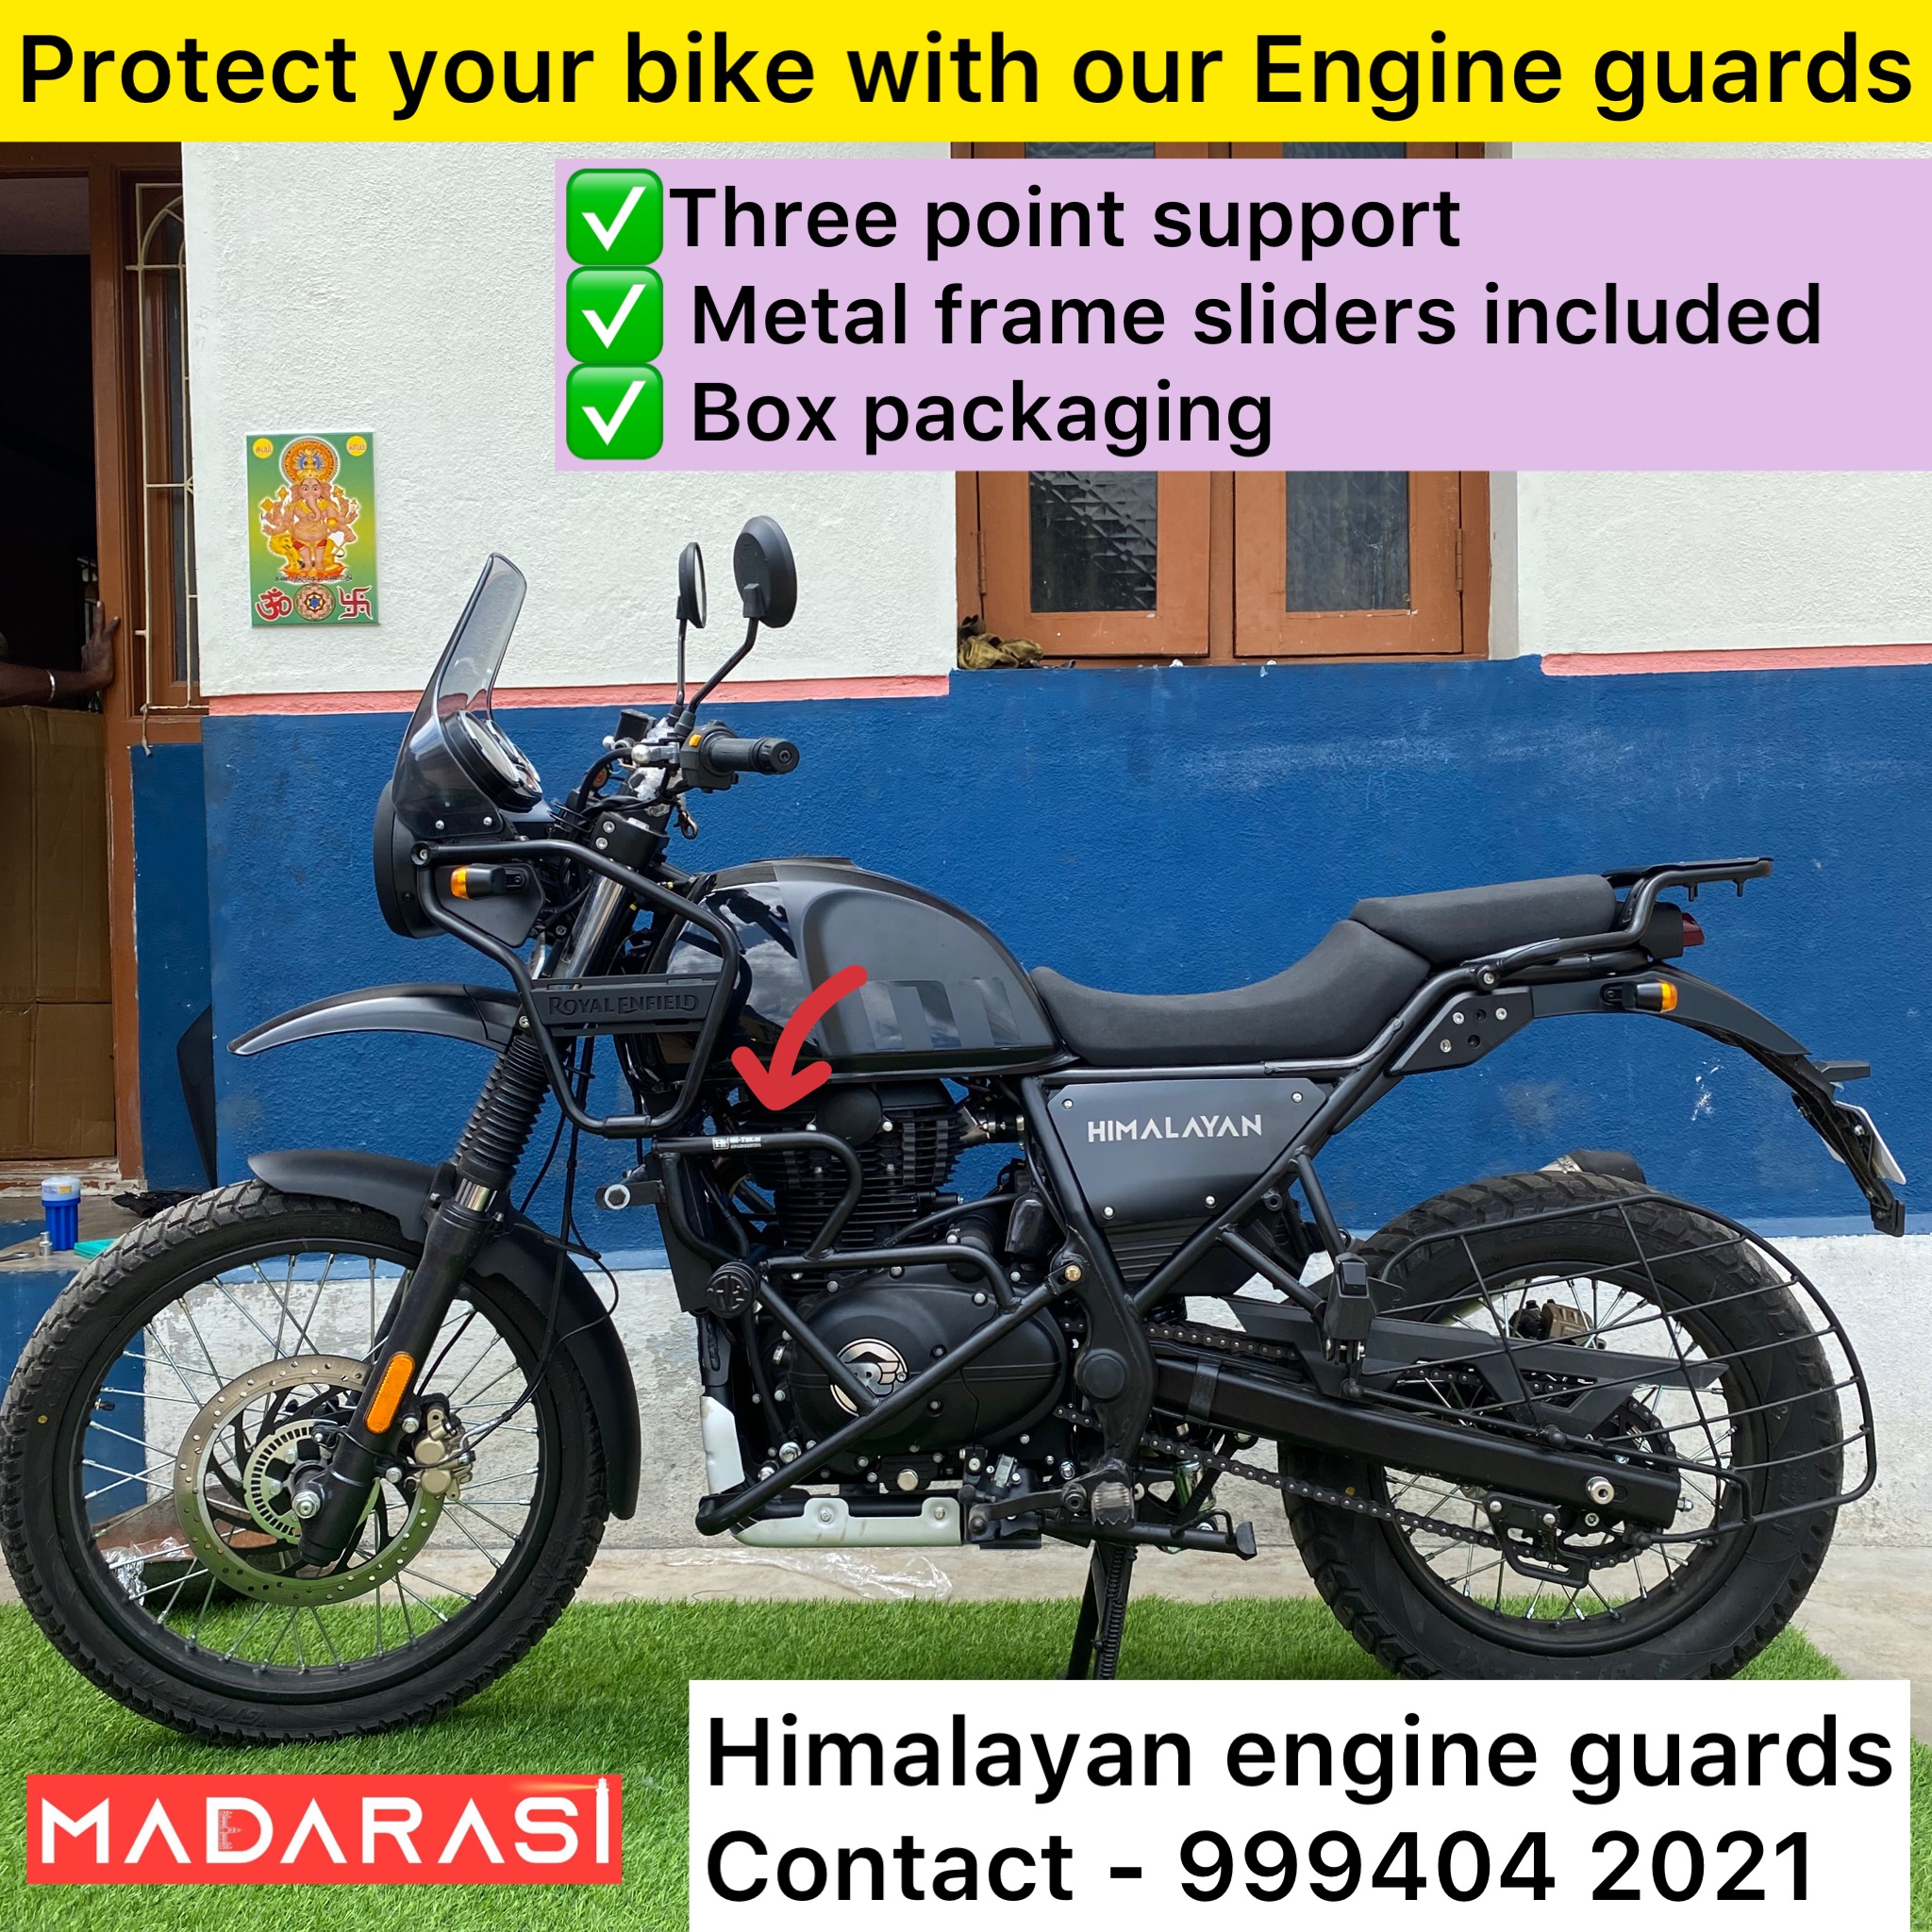 Himalayan engine guards